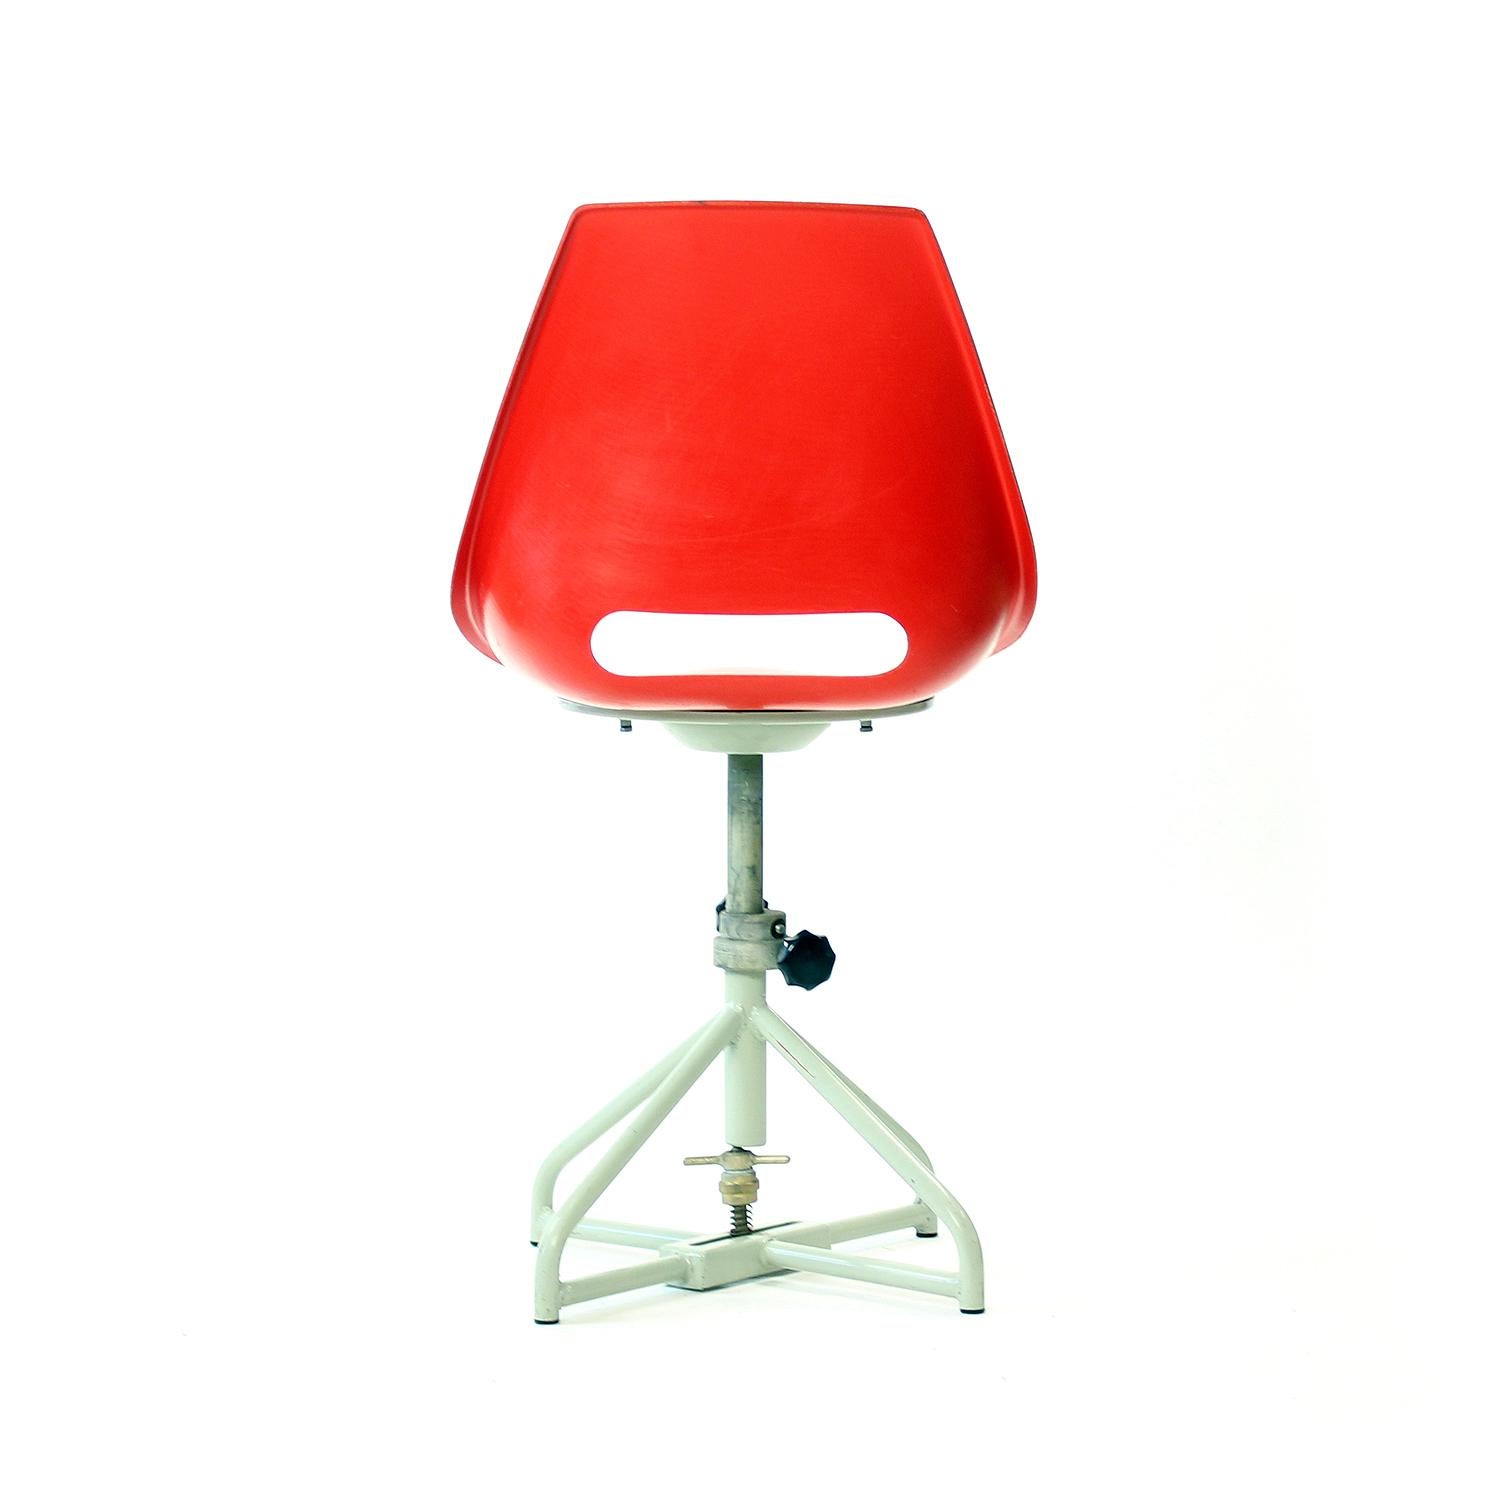 Red Tram Chair By Miroslav Navratil For Vertex, 1960s For Sale 3